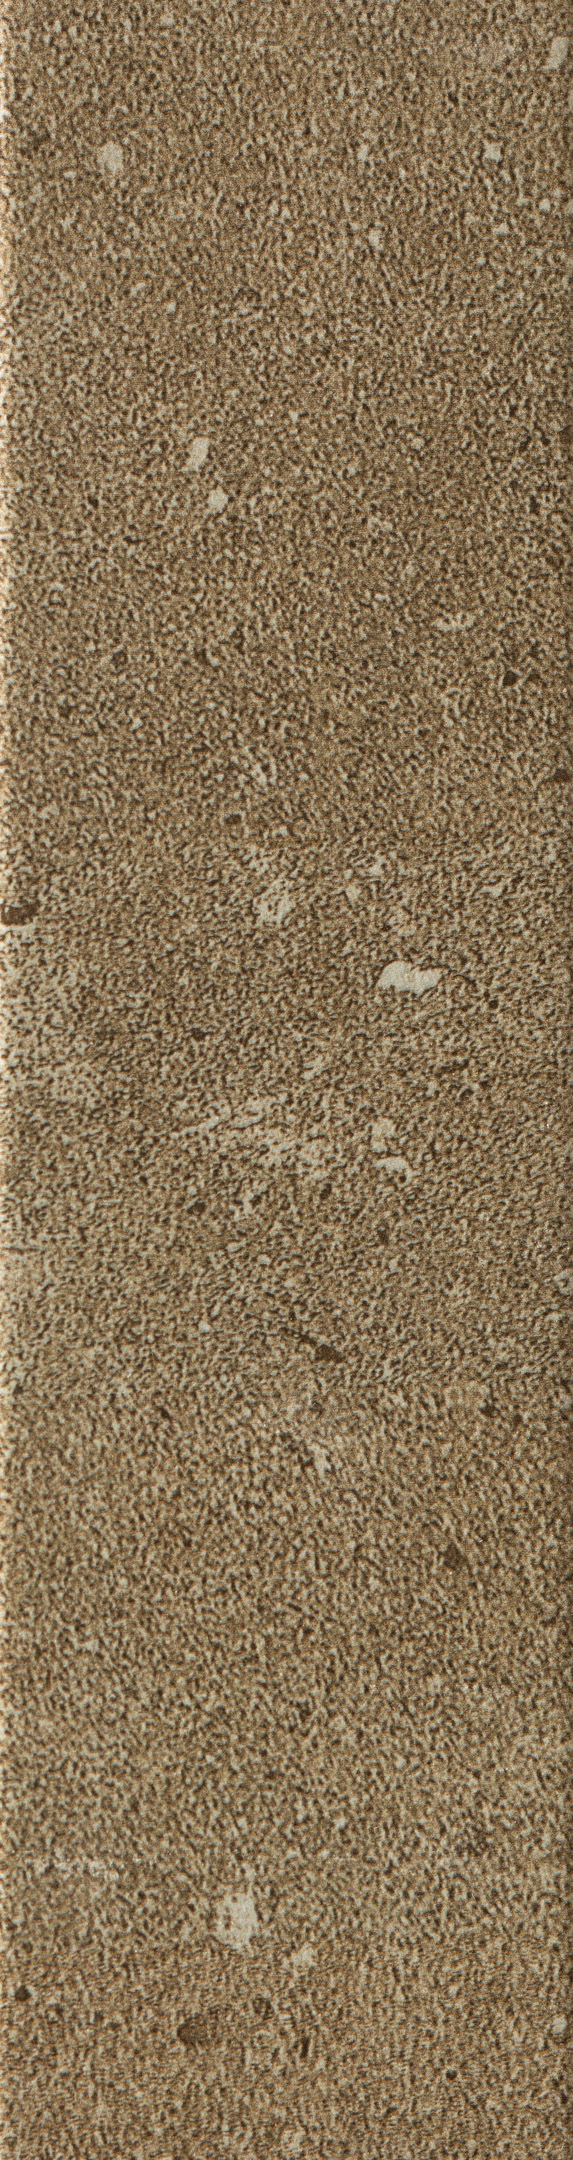 фото Клинкерная плитка керамин юта 3 бежевая 24,5х6,5 см (34 шт.=0,54 кв.м)